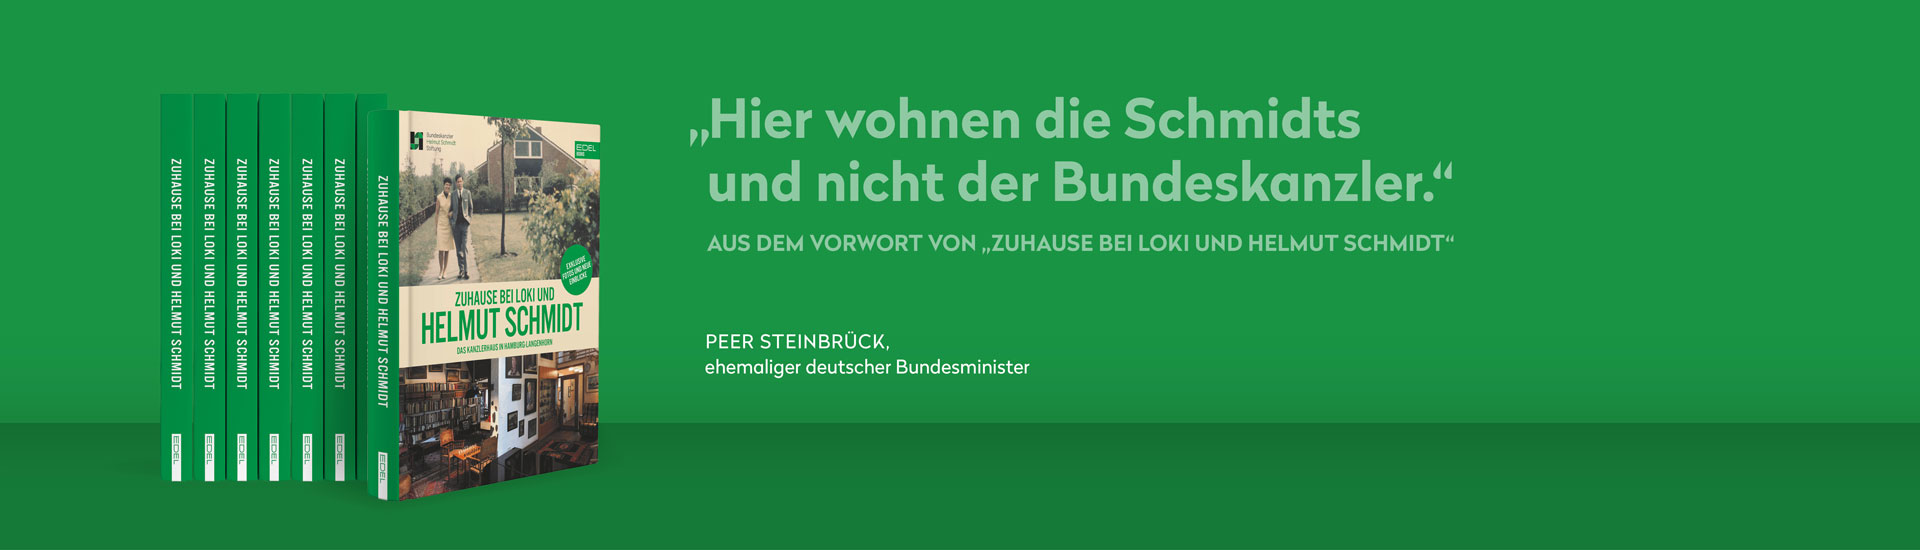 Zuhause-bei-Loki-und-Helmut-Schmidt_Triple-Krise_Web_Banner_Desktop_1920x550px